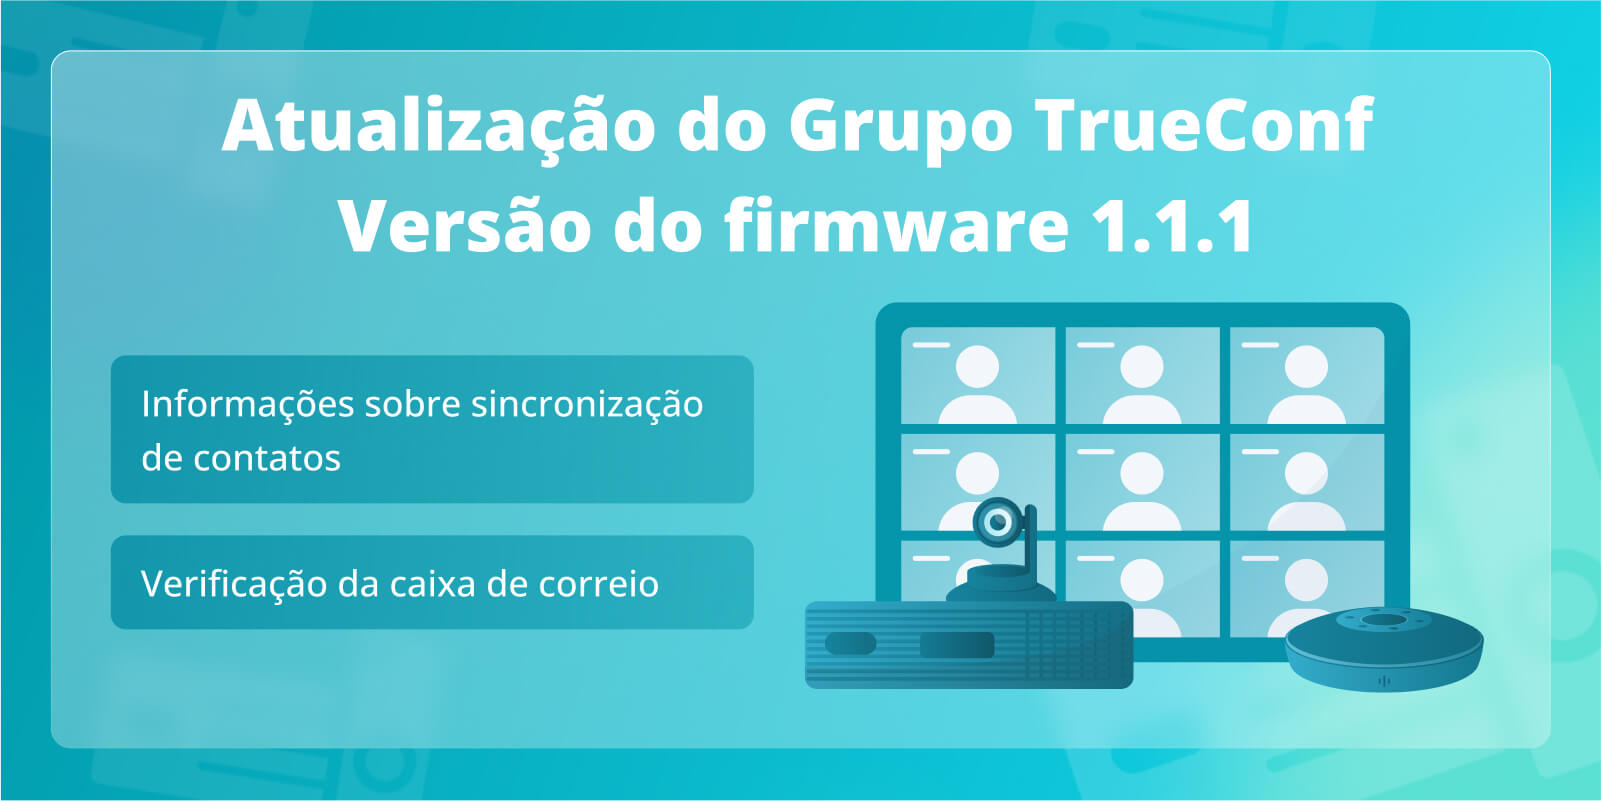 TrueConf Group 1.1.1: Verificação da caixa de correio e informações sobre sincronização de contatos com TrueConf Server e TrueConf MCU 3